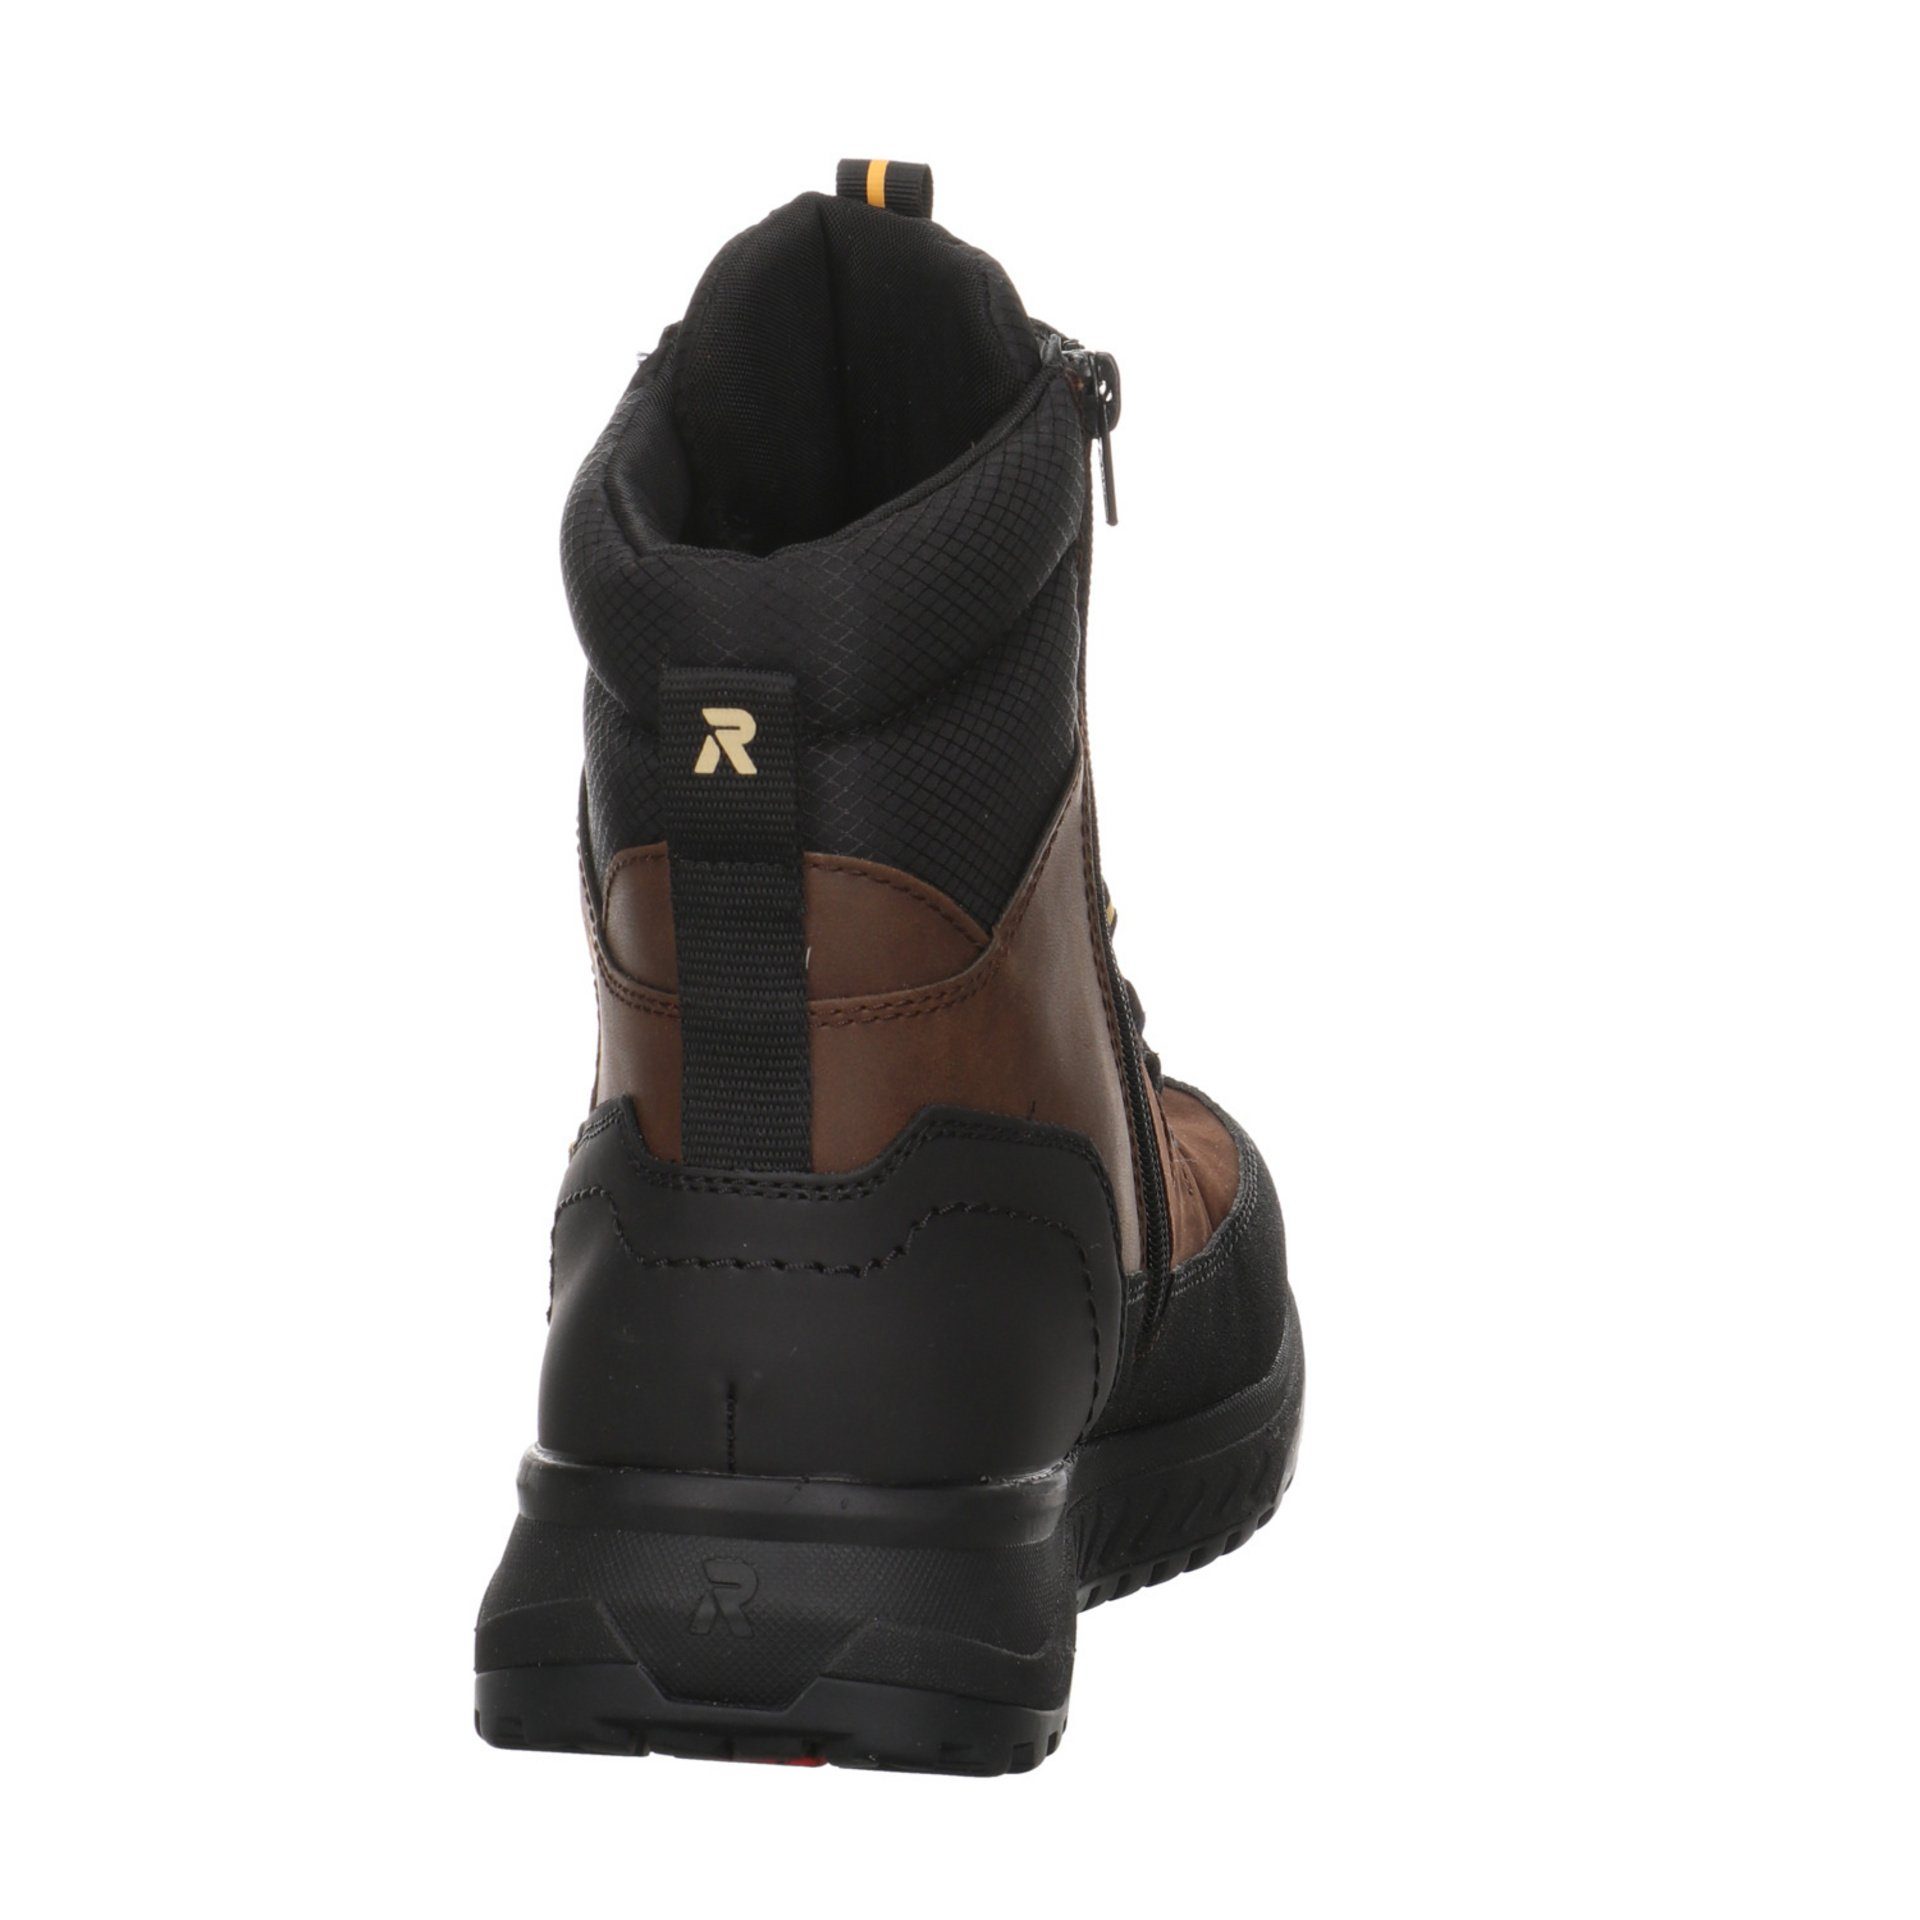 Winterstiefel Schuhe Freizeit Boots Herren Snowboots Rieker dunkel Elegant braun Leder-/Textilkombination